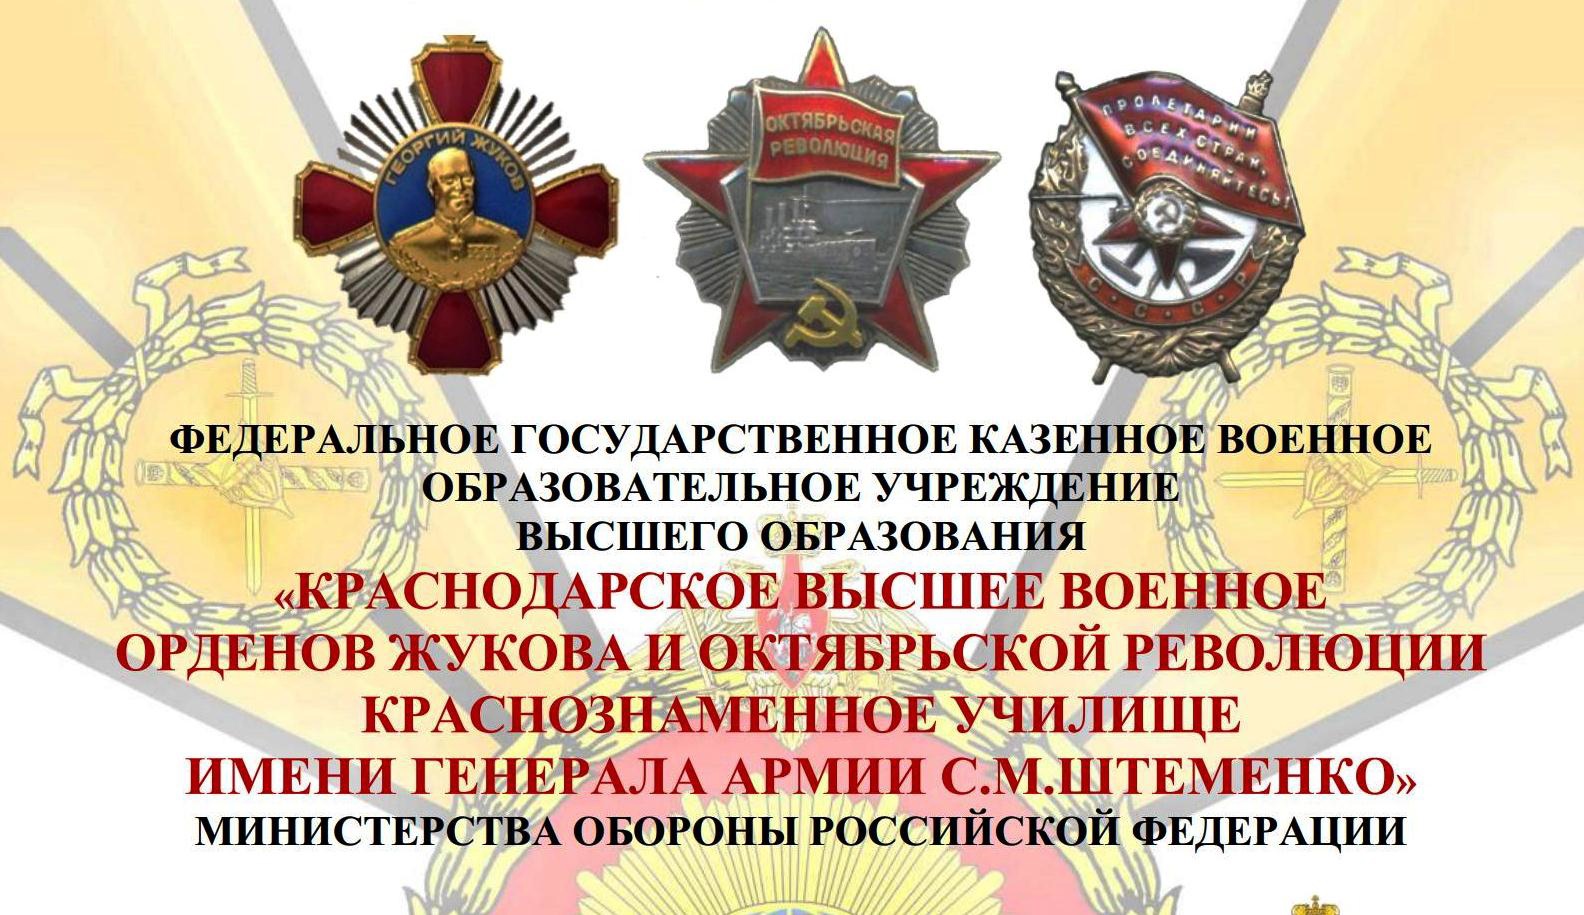 &amp;quot;Краснодарское высшее военное училище имени генерала армии С.М. Штеменко&amp;quot; приглашает на обучение.